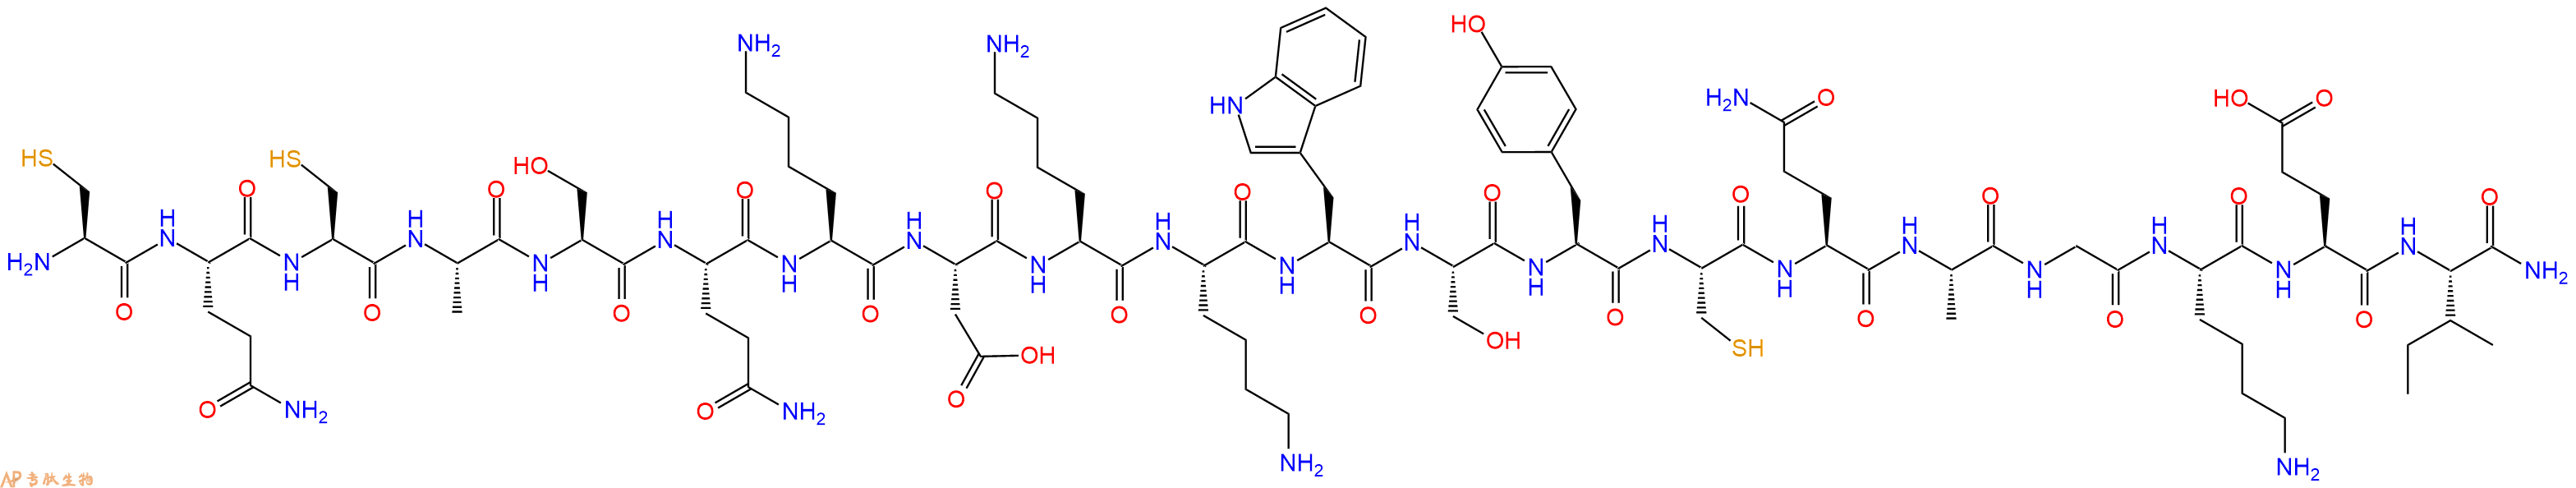 专肽生物产品[Tyr123]PreproEndothelin(110-130), amide, human